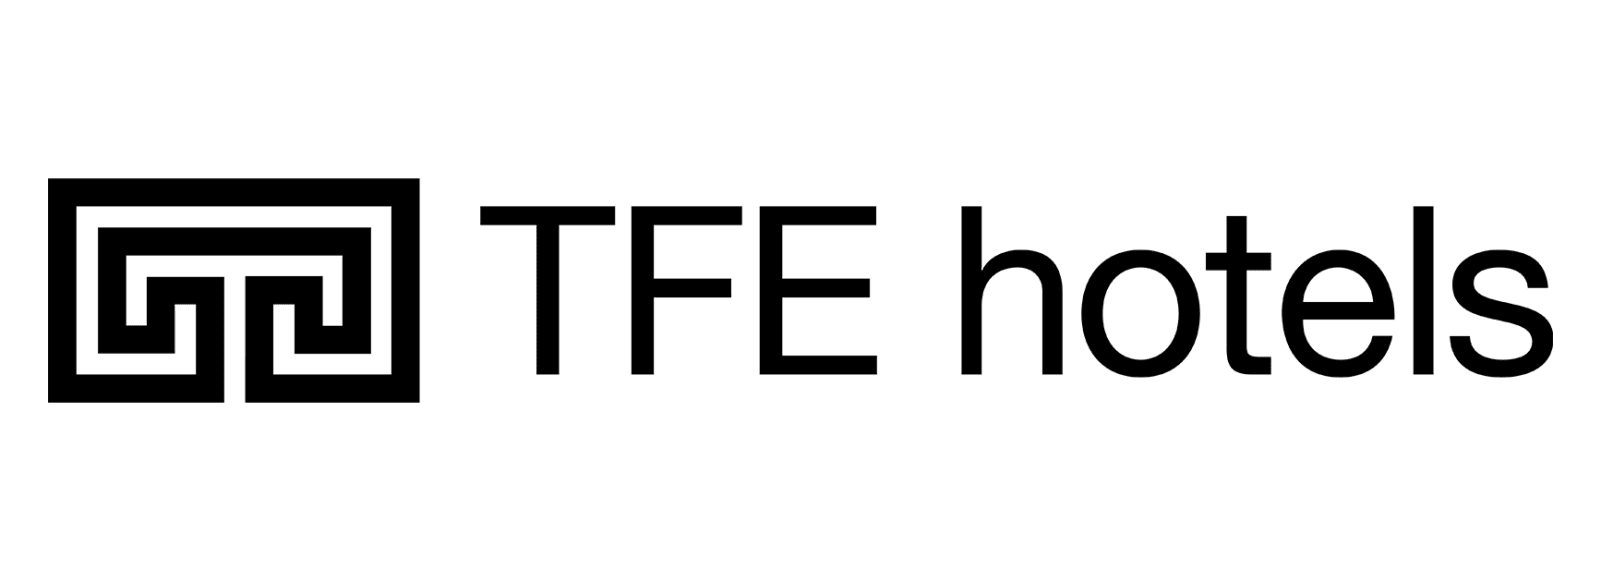 TFE Hotels logo